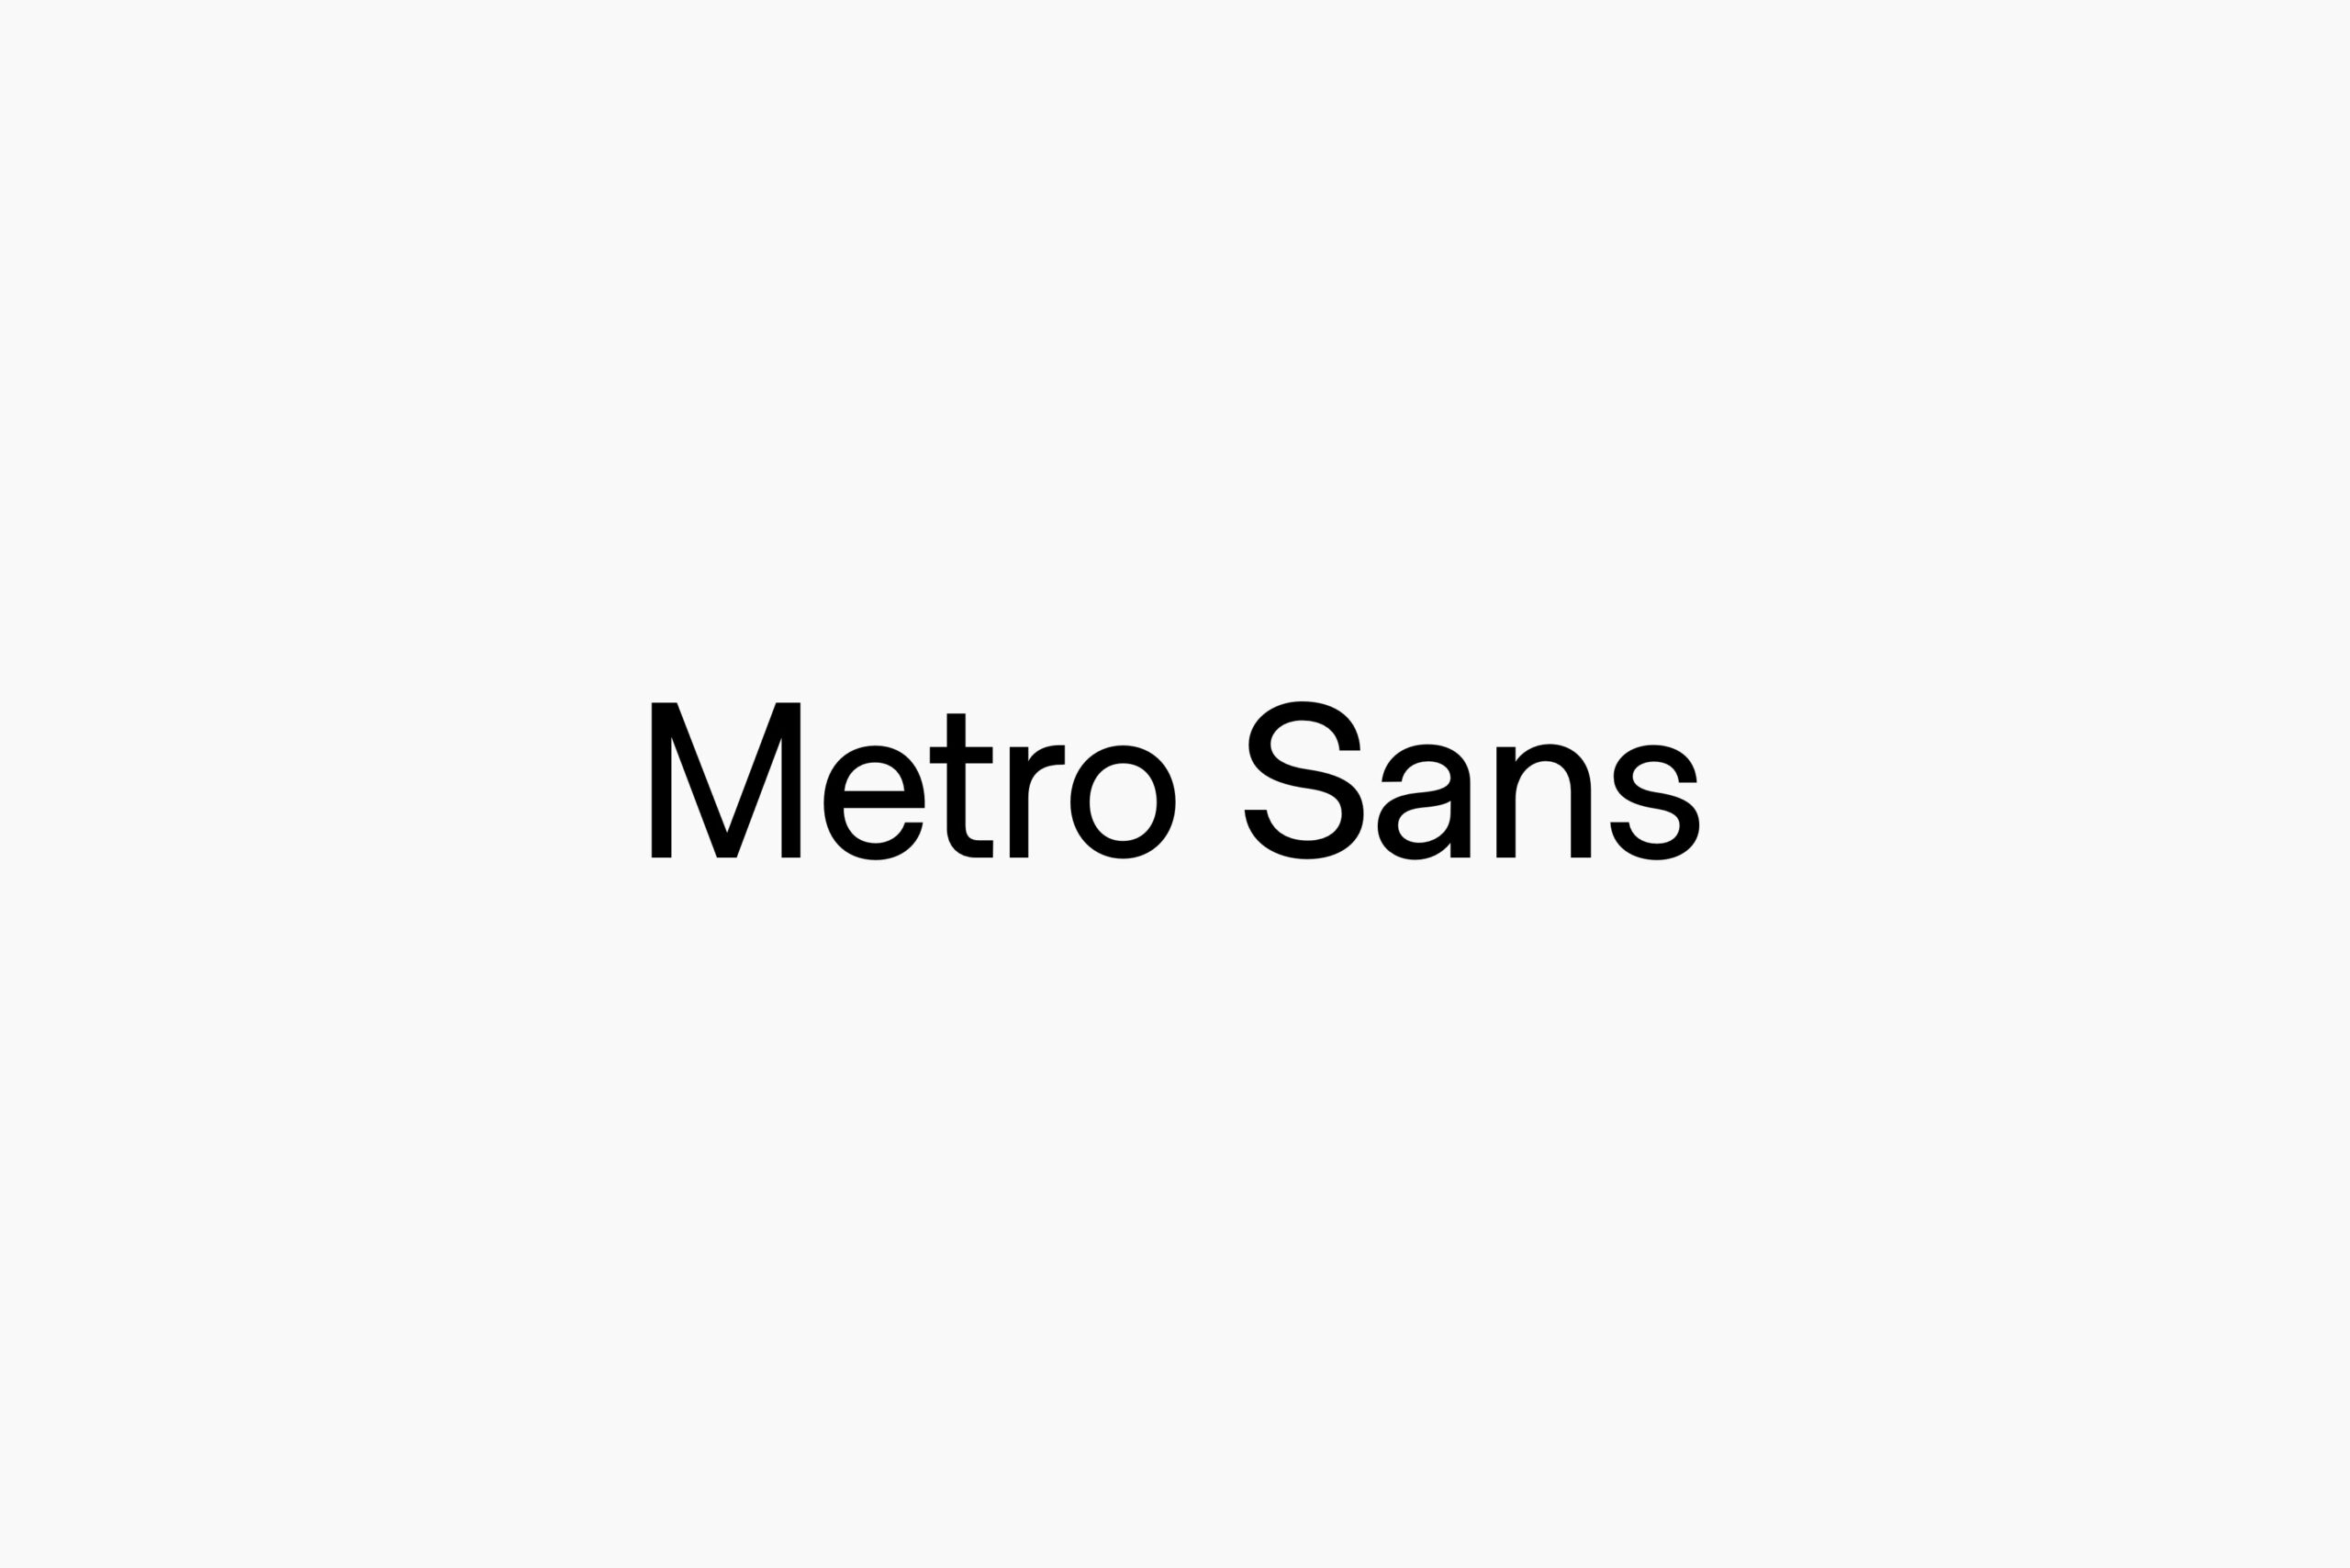 Metro Sans Full Family